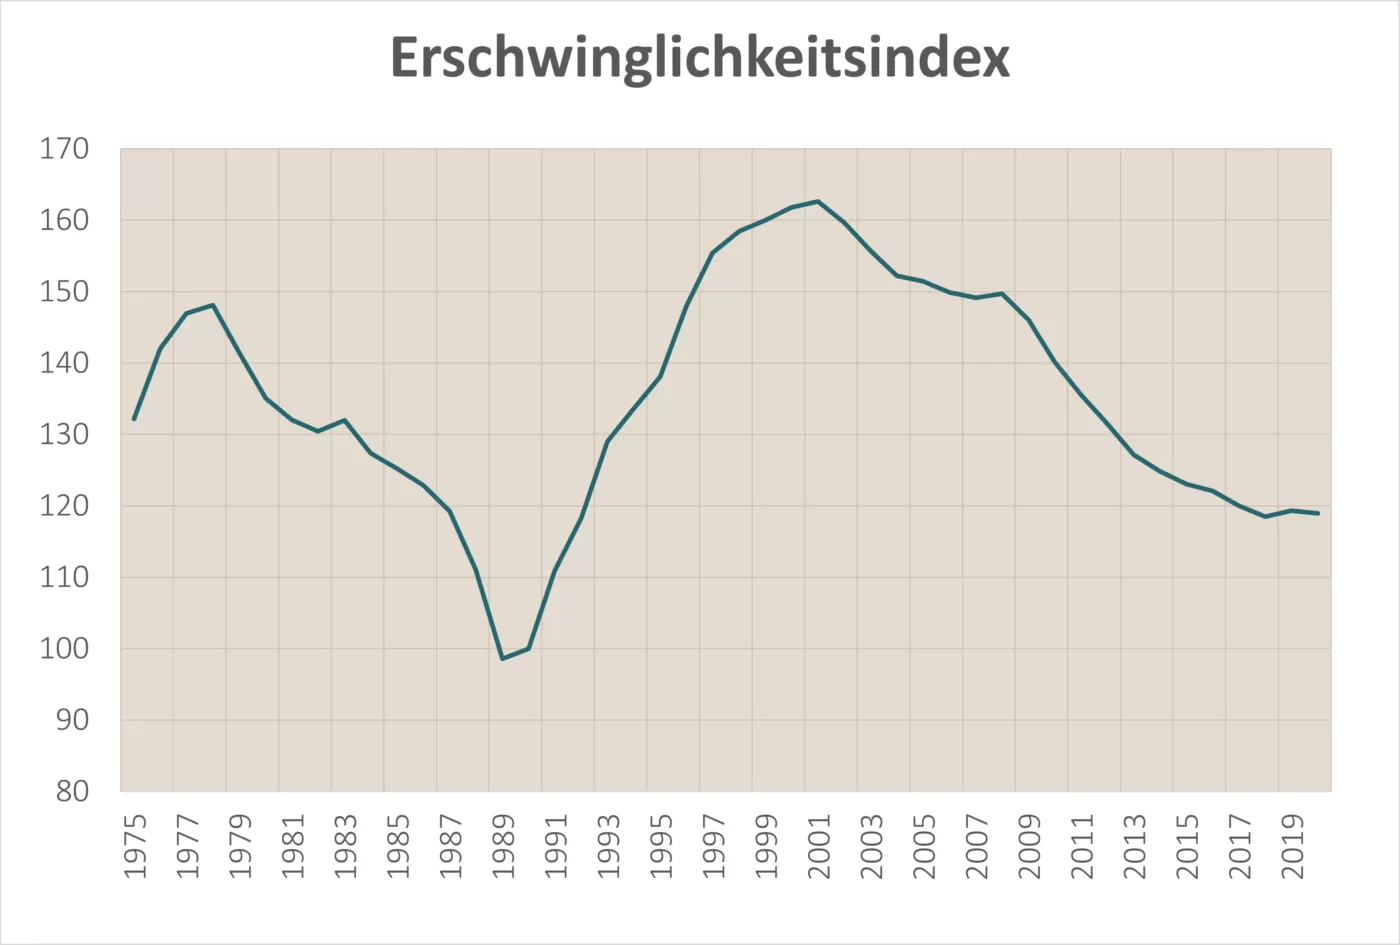 Erschwinglichkeitsindex Immobilien Schweiz historisch seit 1975